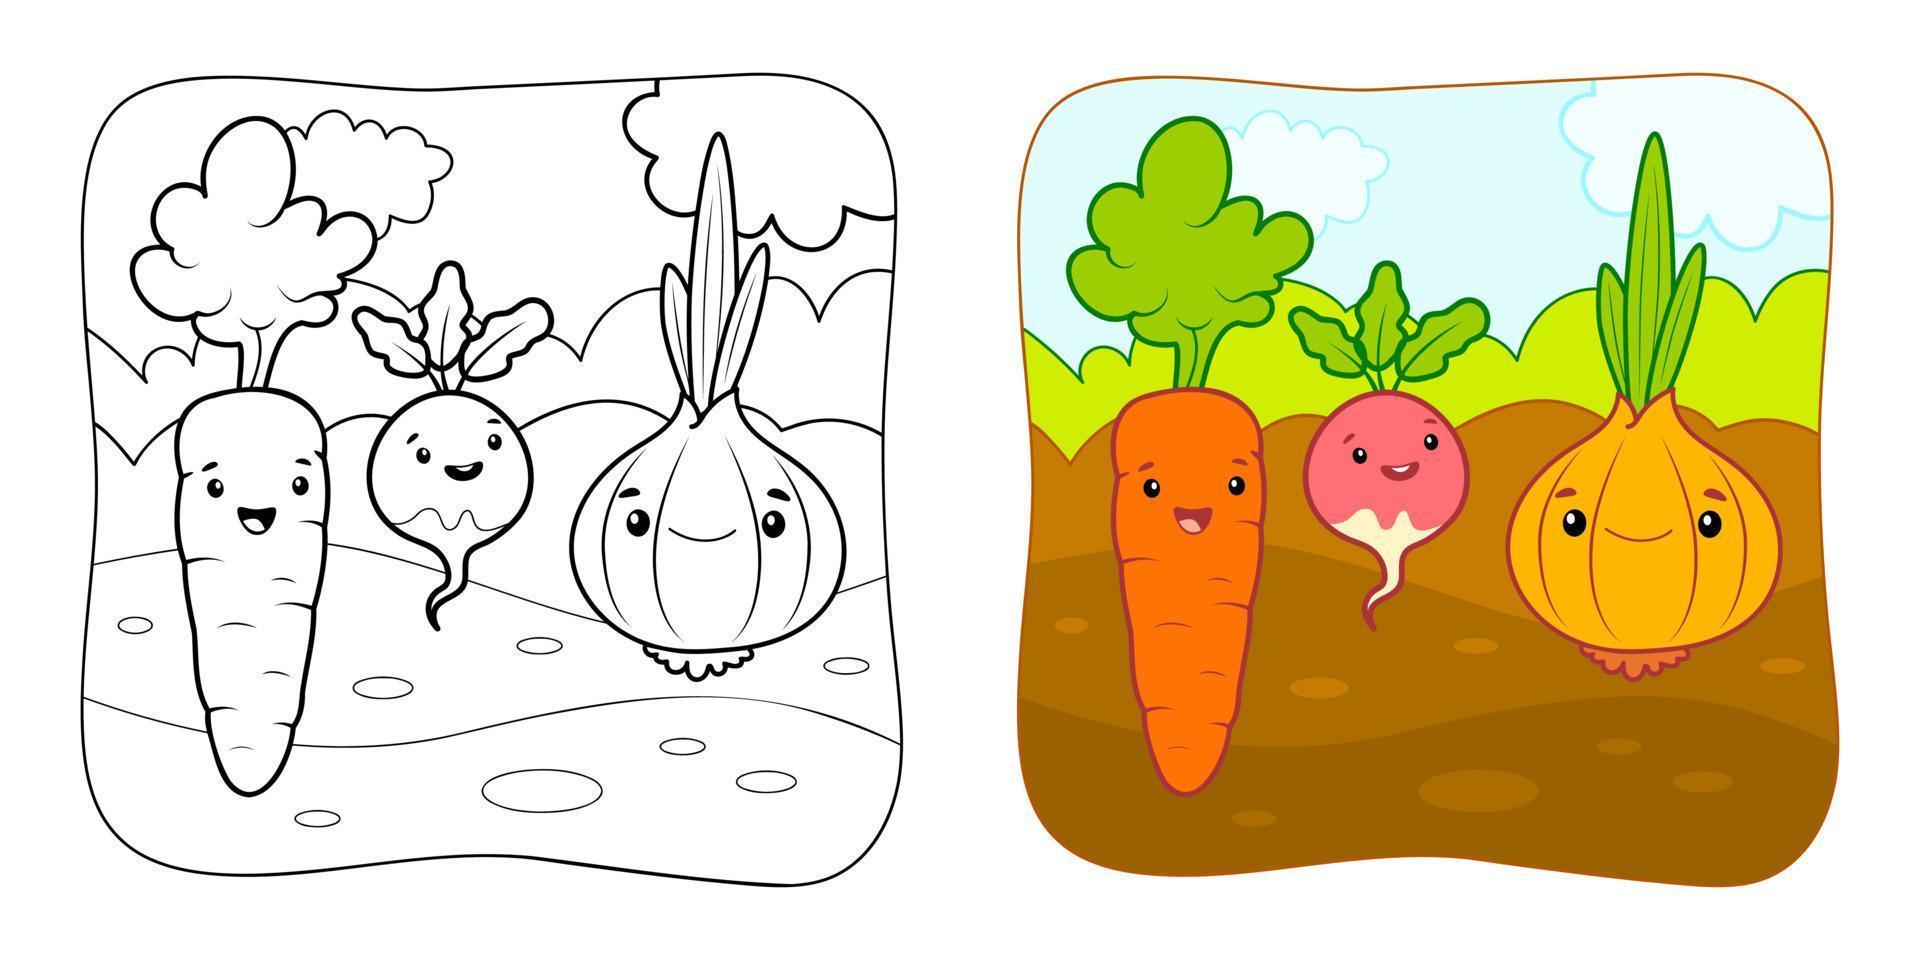 livre de coloriage ou page de coloriage pour les enfants. clipart d'illustration vectorielle de légumes. fond naturel. vecteur